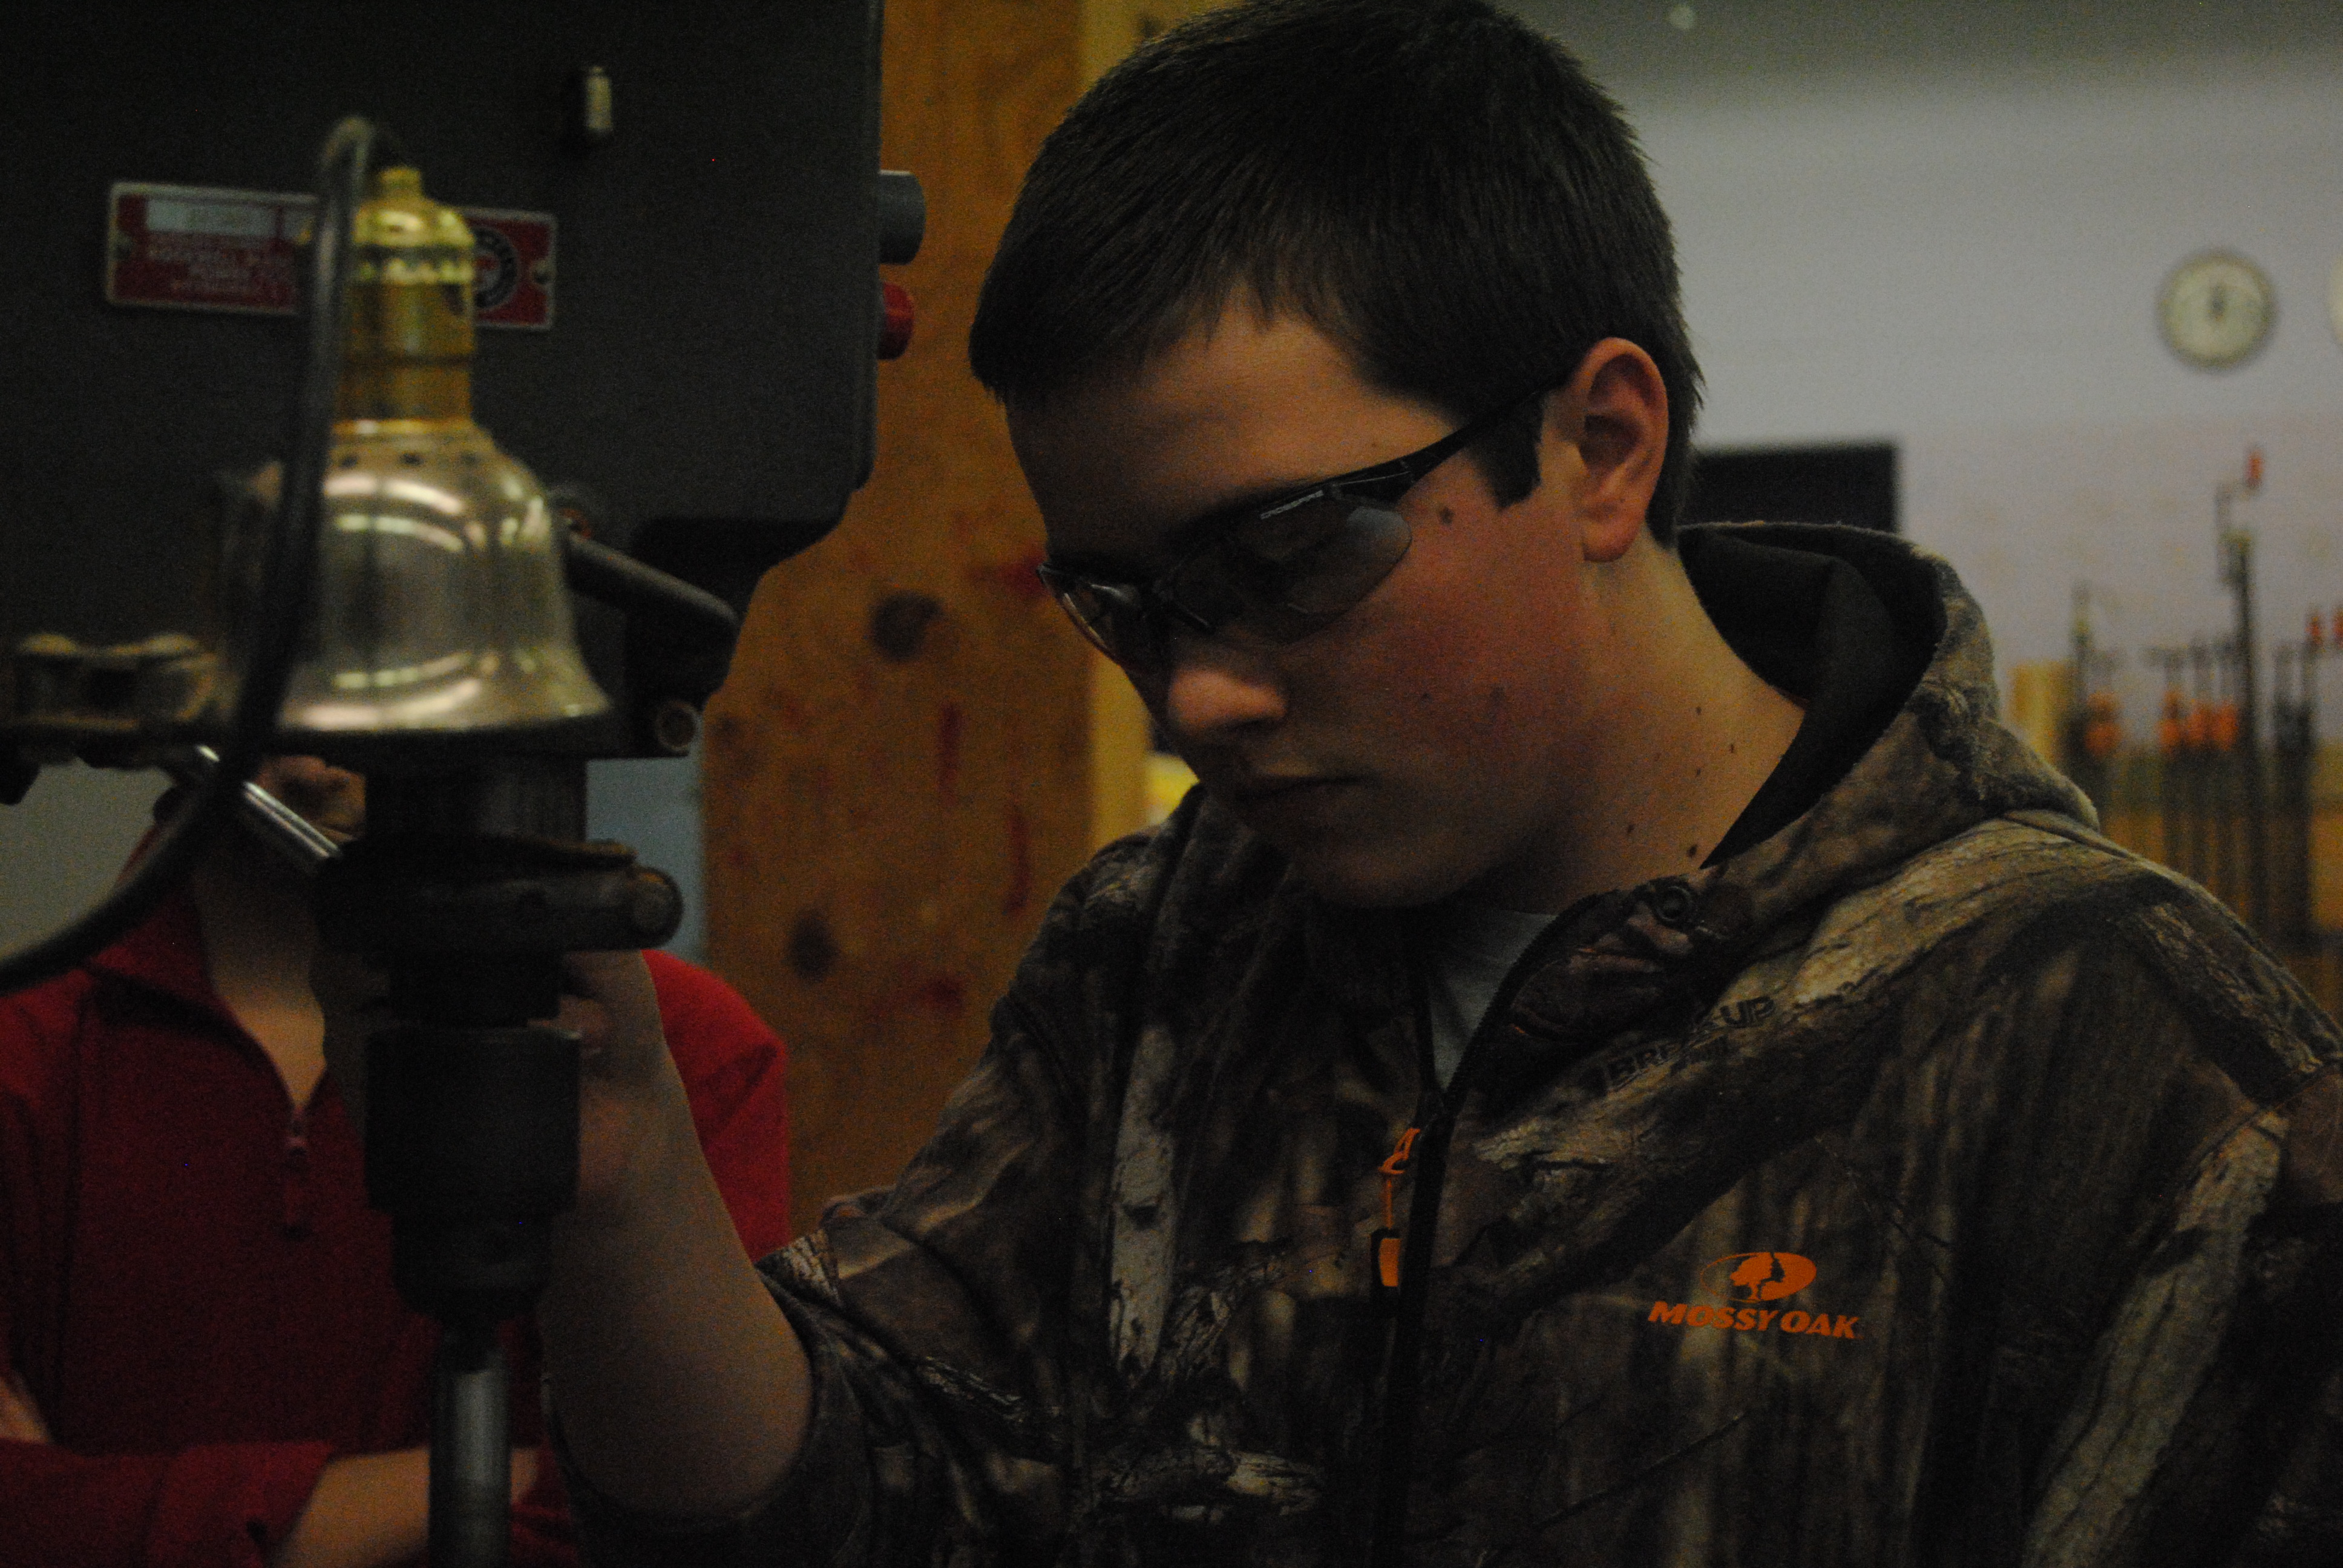 Freshman Matt Slaten works on a project in Mr. Goodman’s shop class.